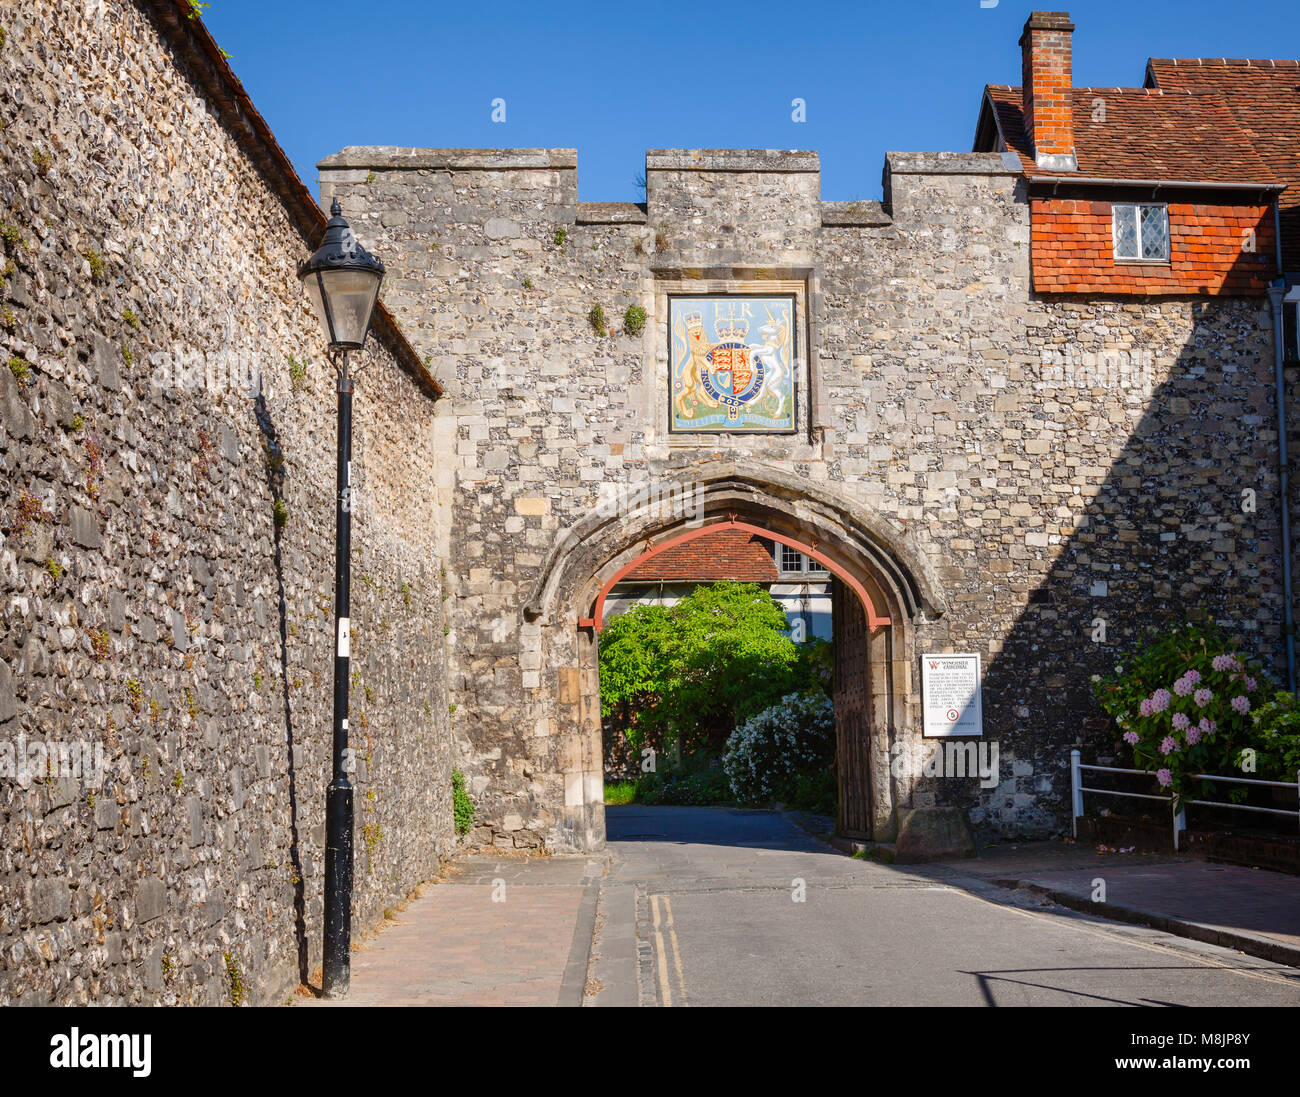 Priory Gate Eingang zur Kathedrale von Winchester mit Stadt Wappen und Parkplatz Einschränkung bemerken, Hampshire, England, Großbritannien Stockfoto